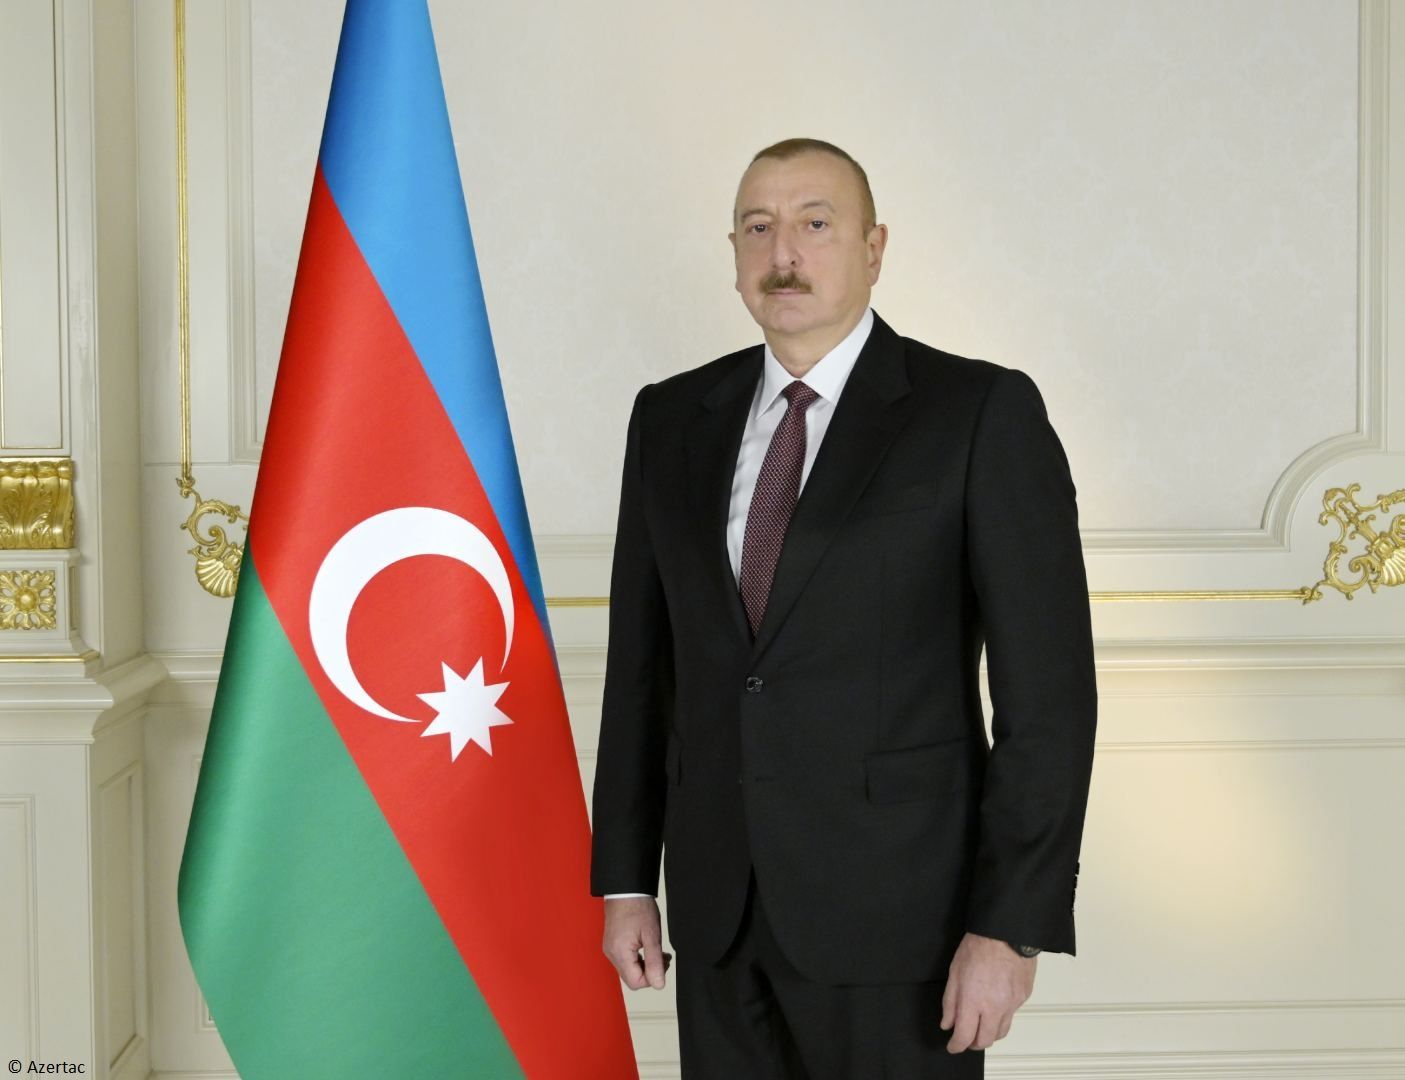 Le président Ilham Aliyev a partagé une publication sur Facebook à l'occasion de l'Aïd al-Adha